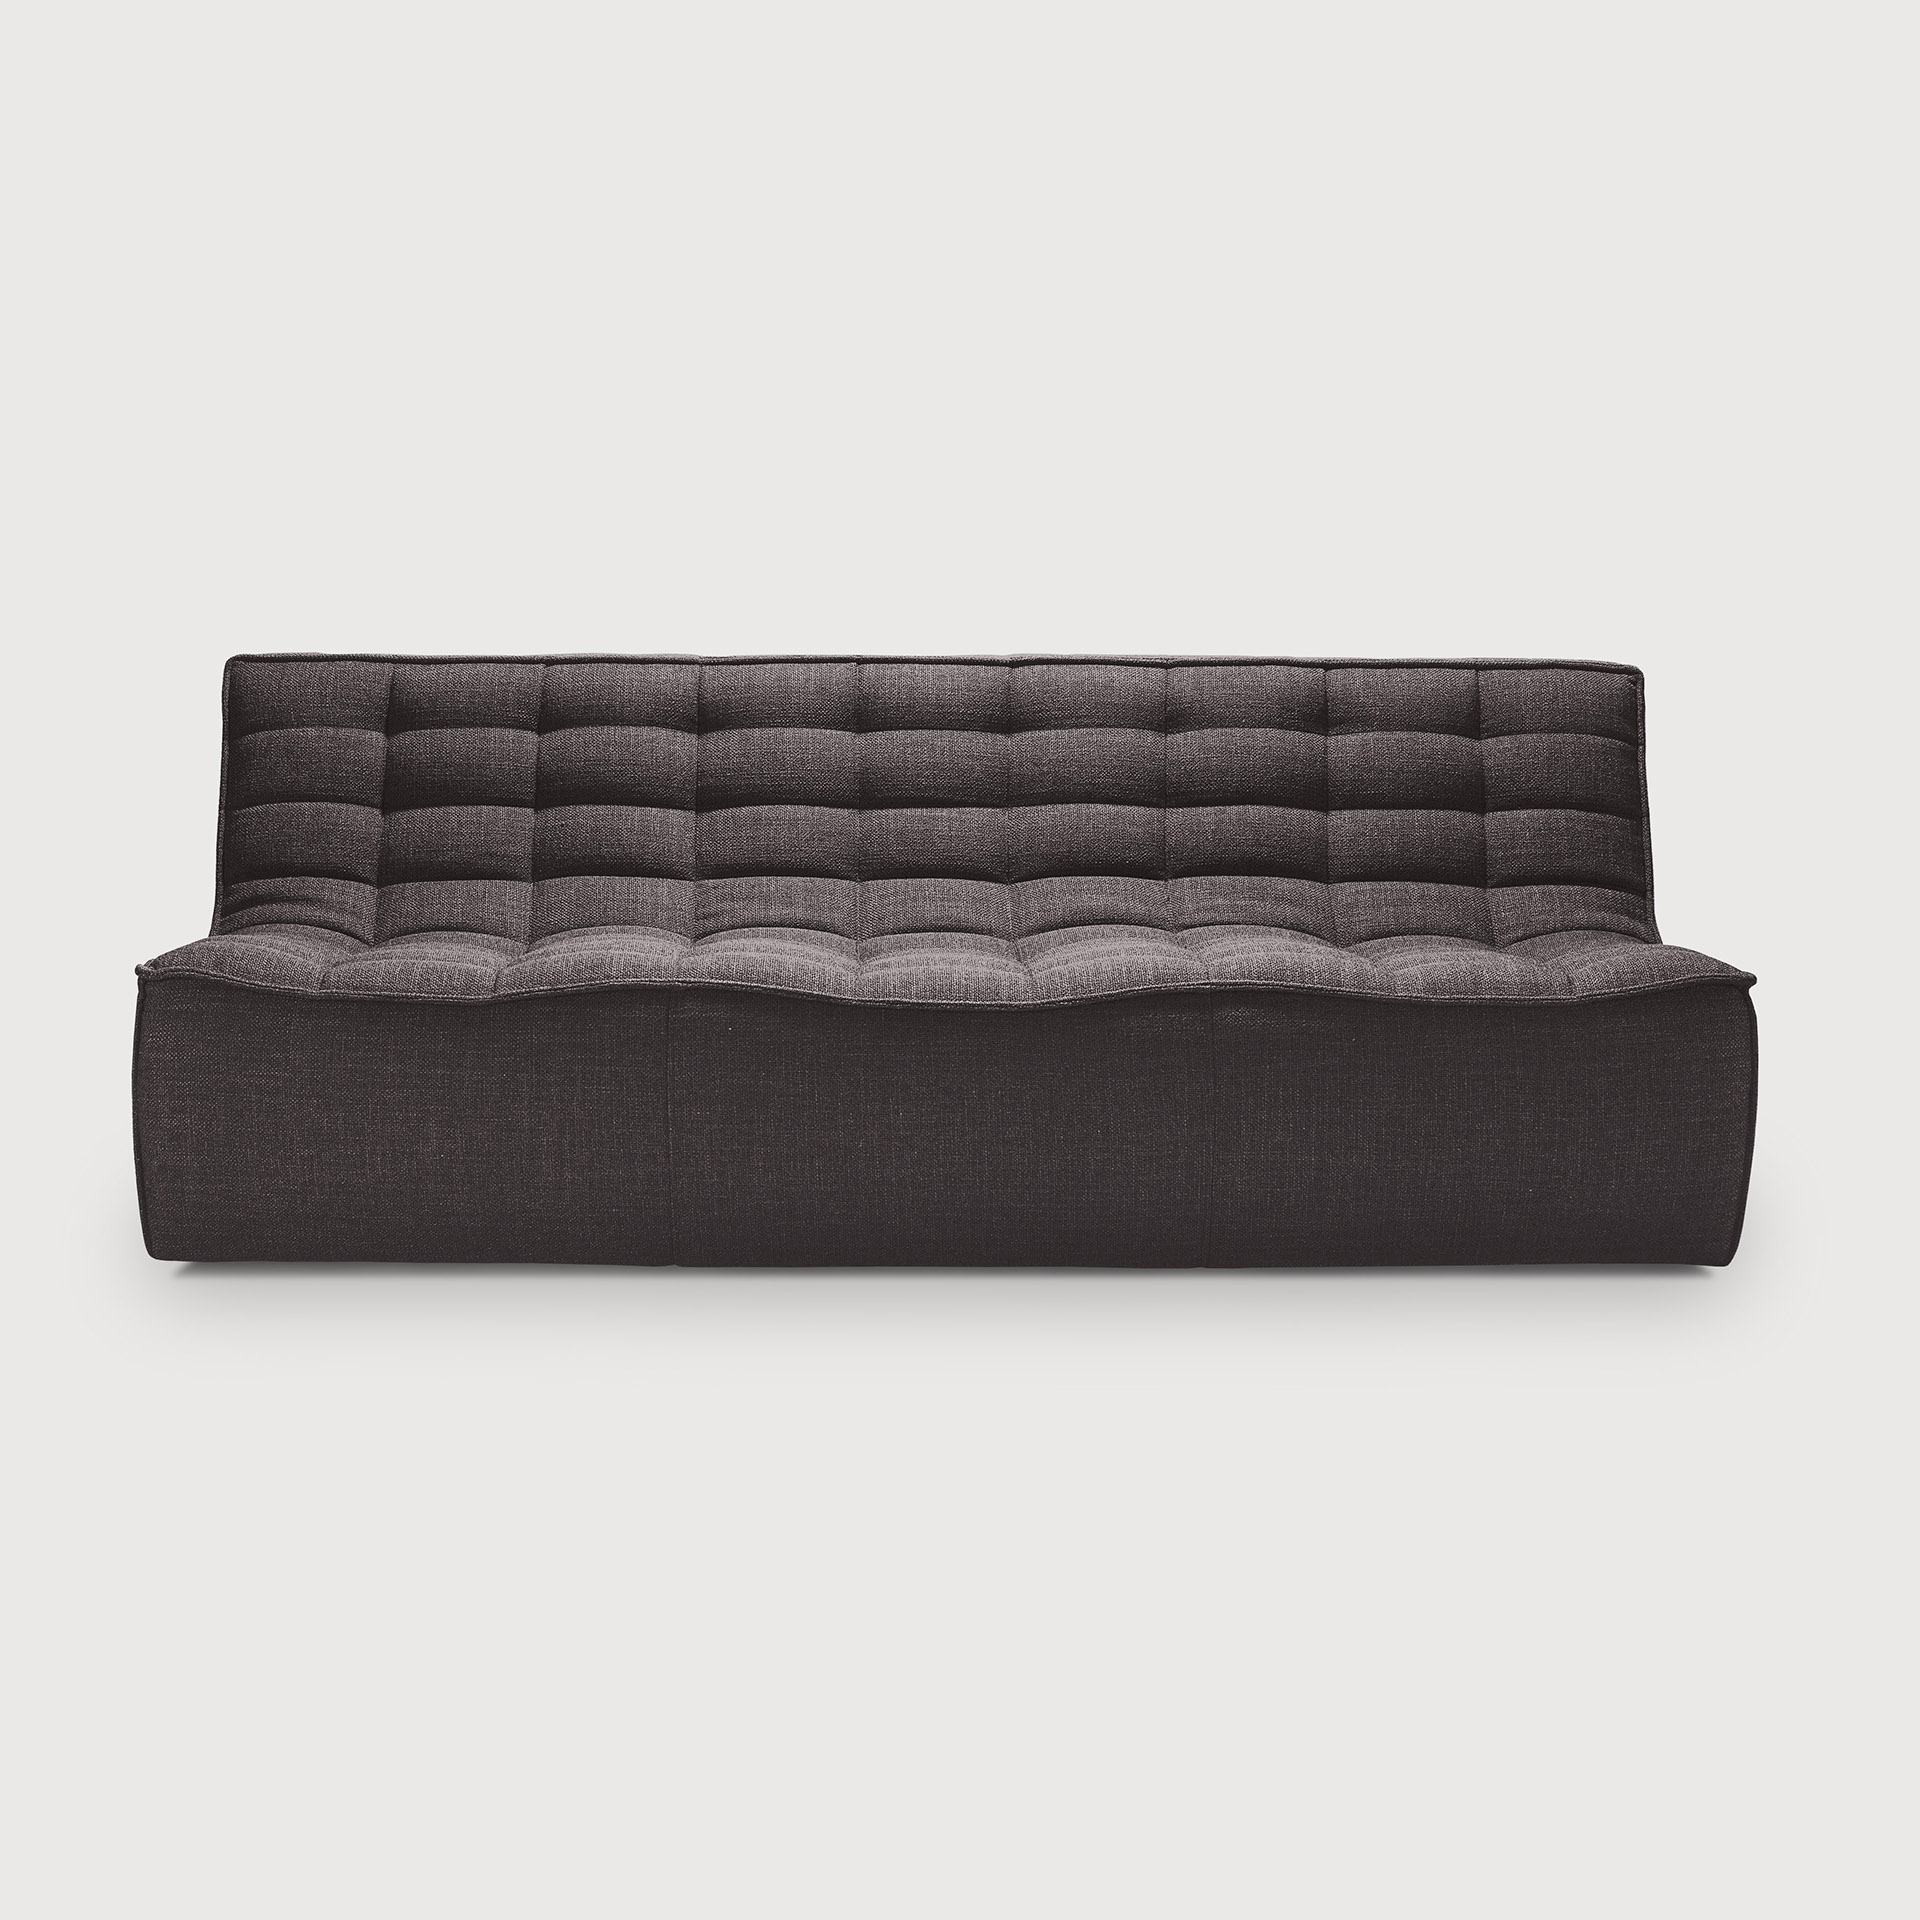 [20234*] N701 sofa - 3 seater  (Dark grey)